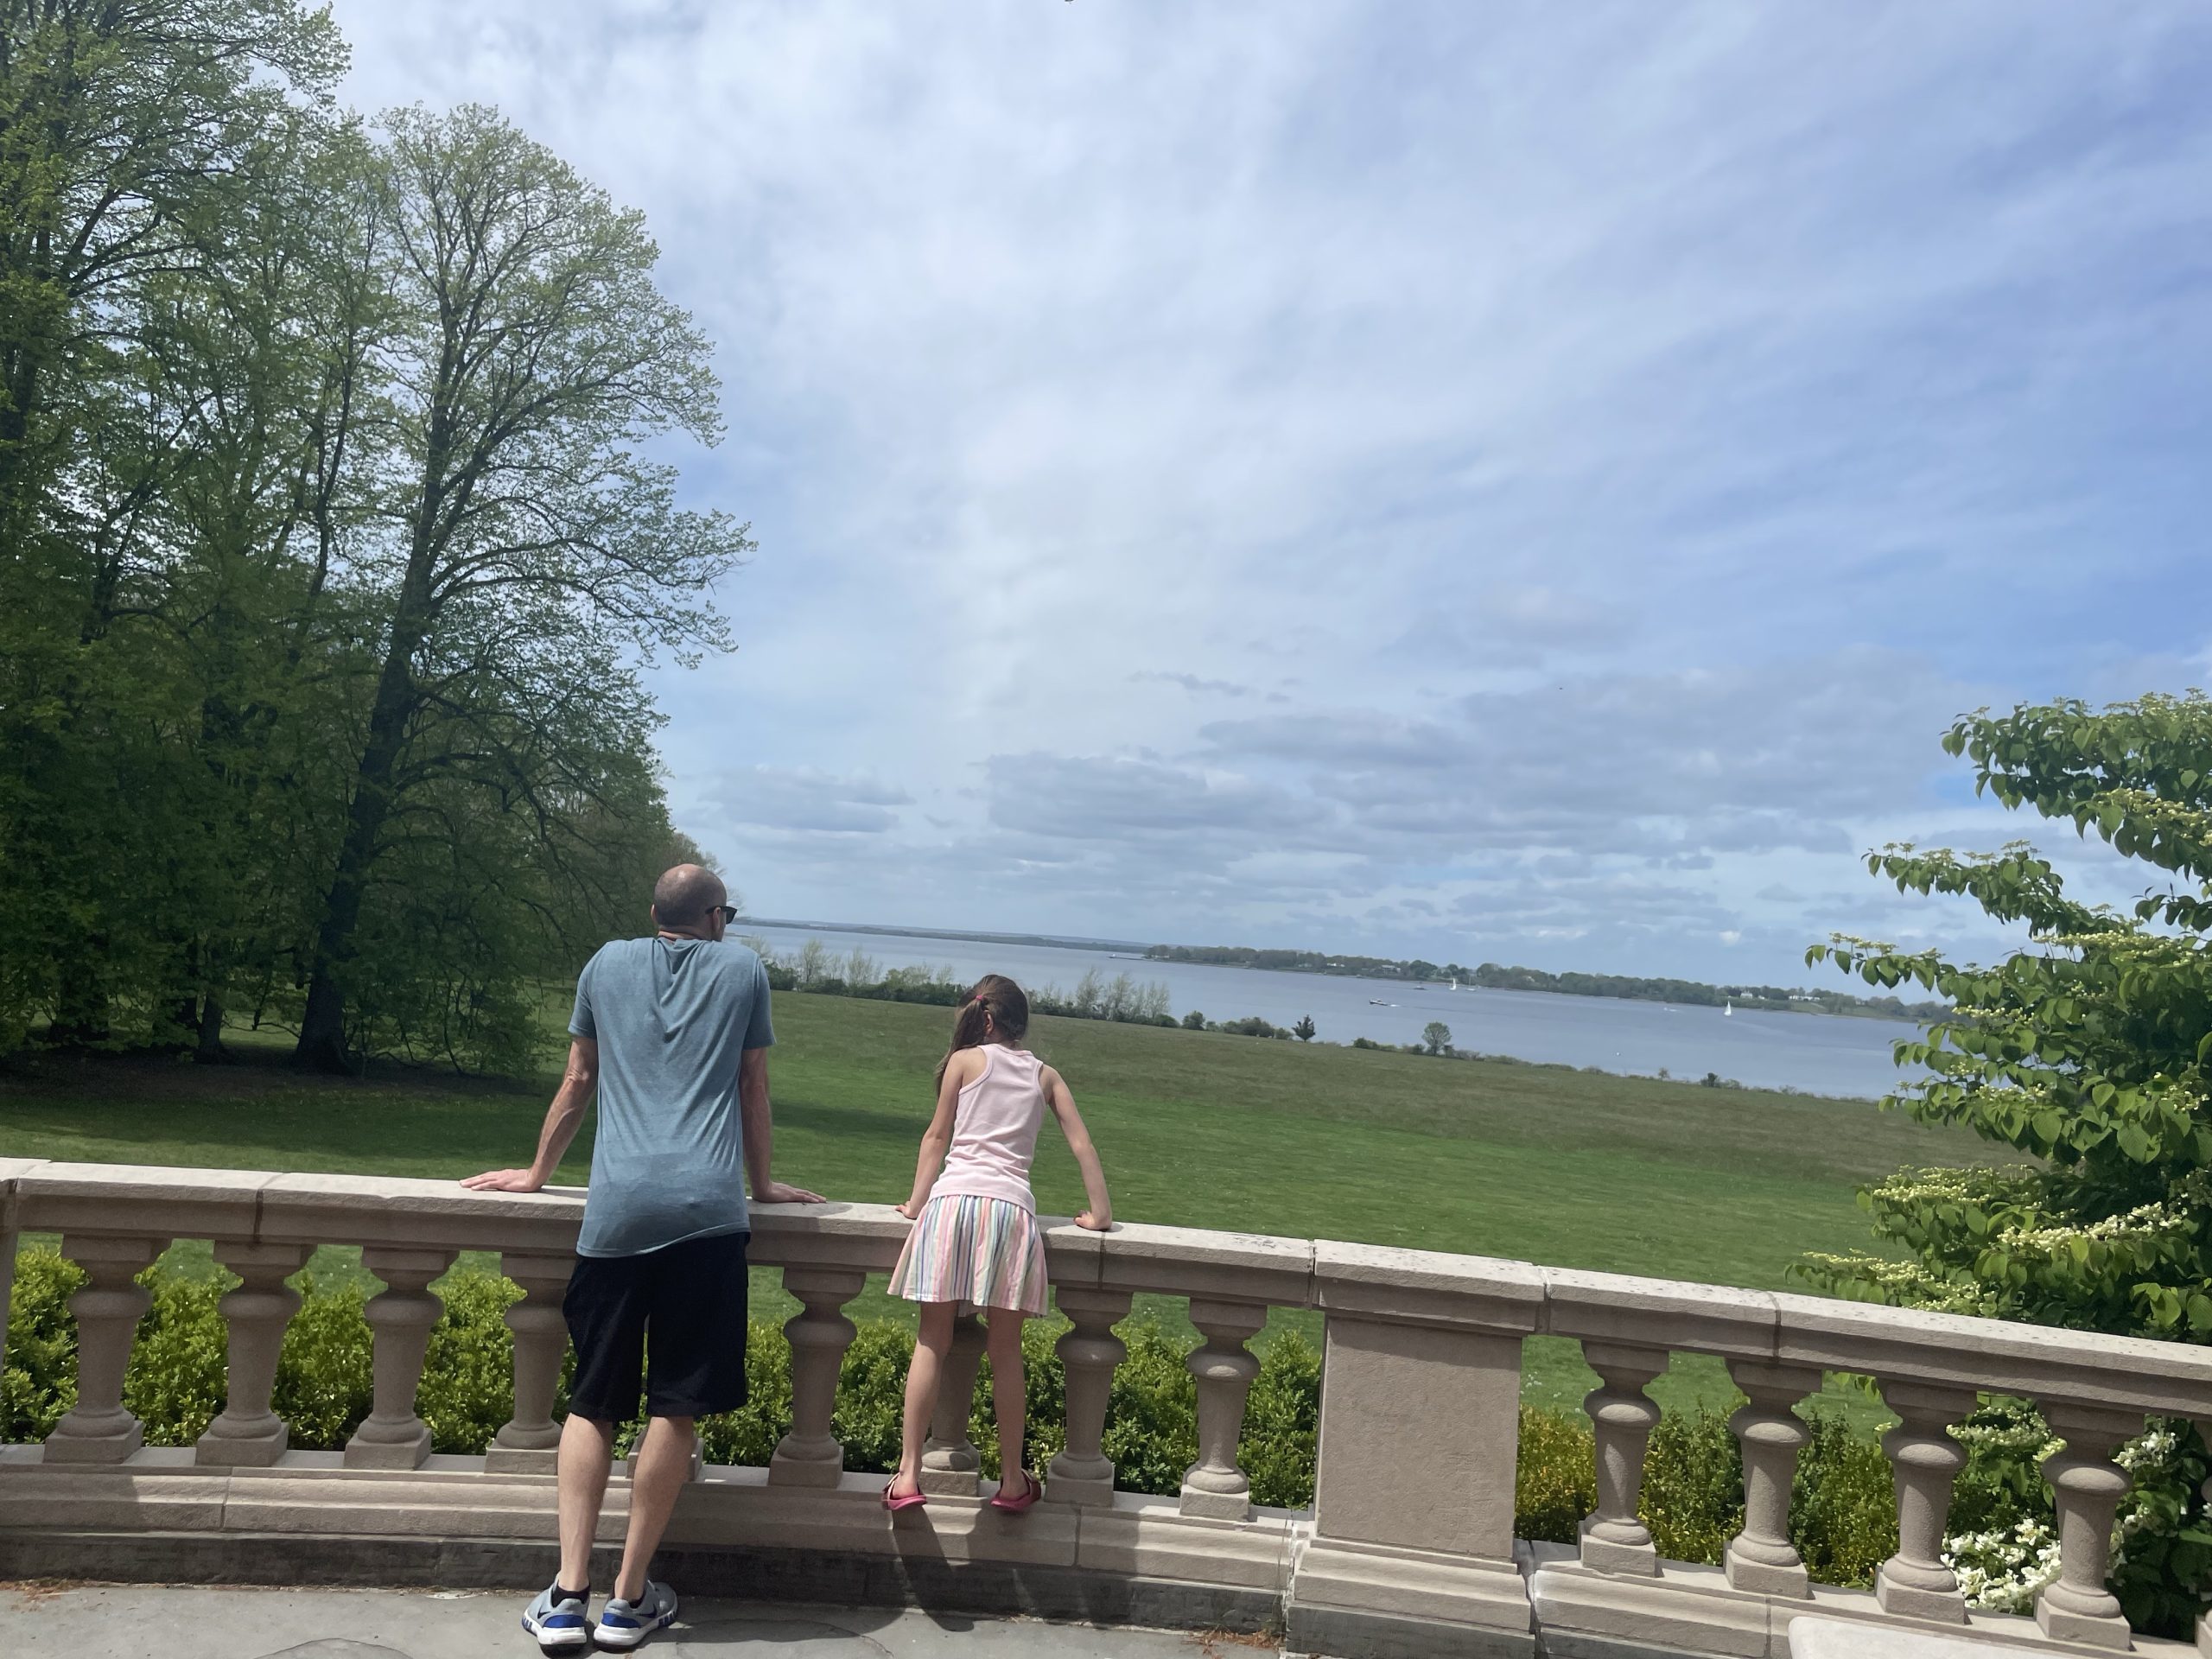  Blithewold Mansion in Bristol Rhode Island with kids